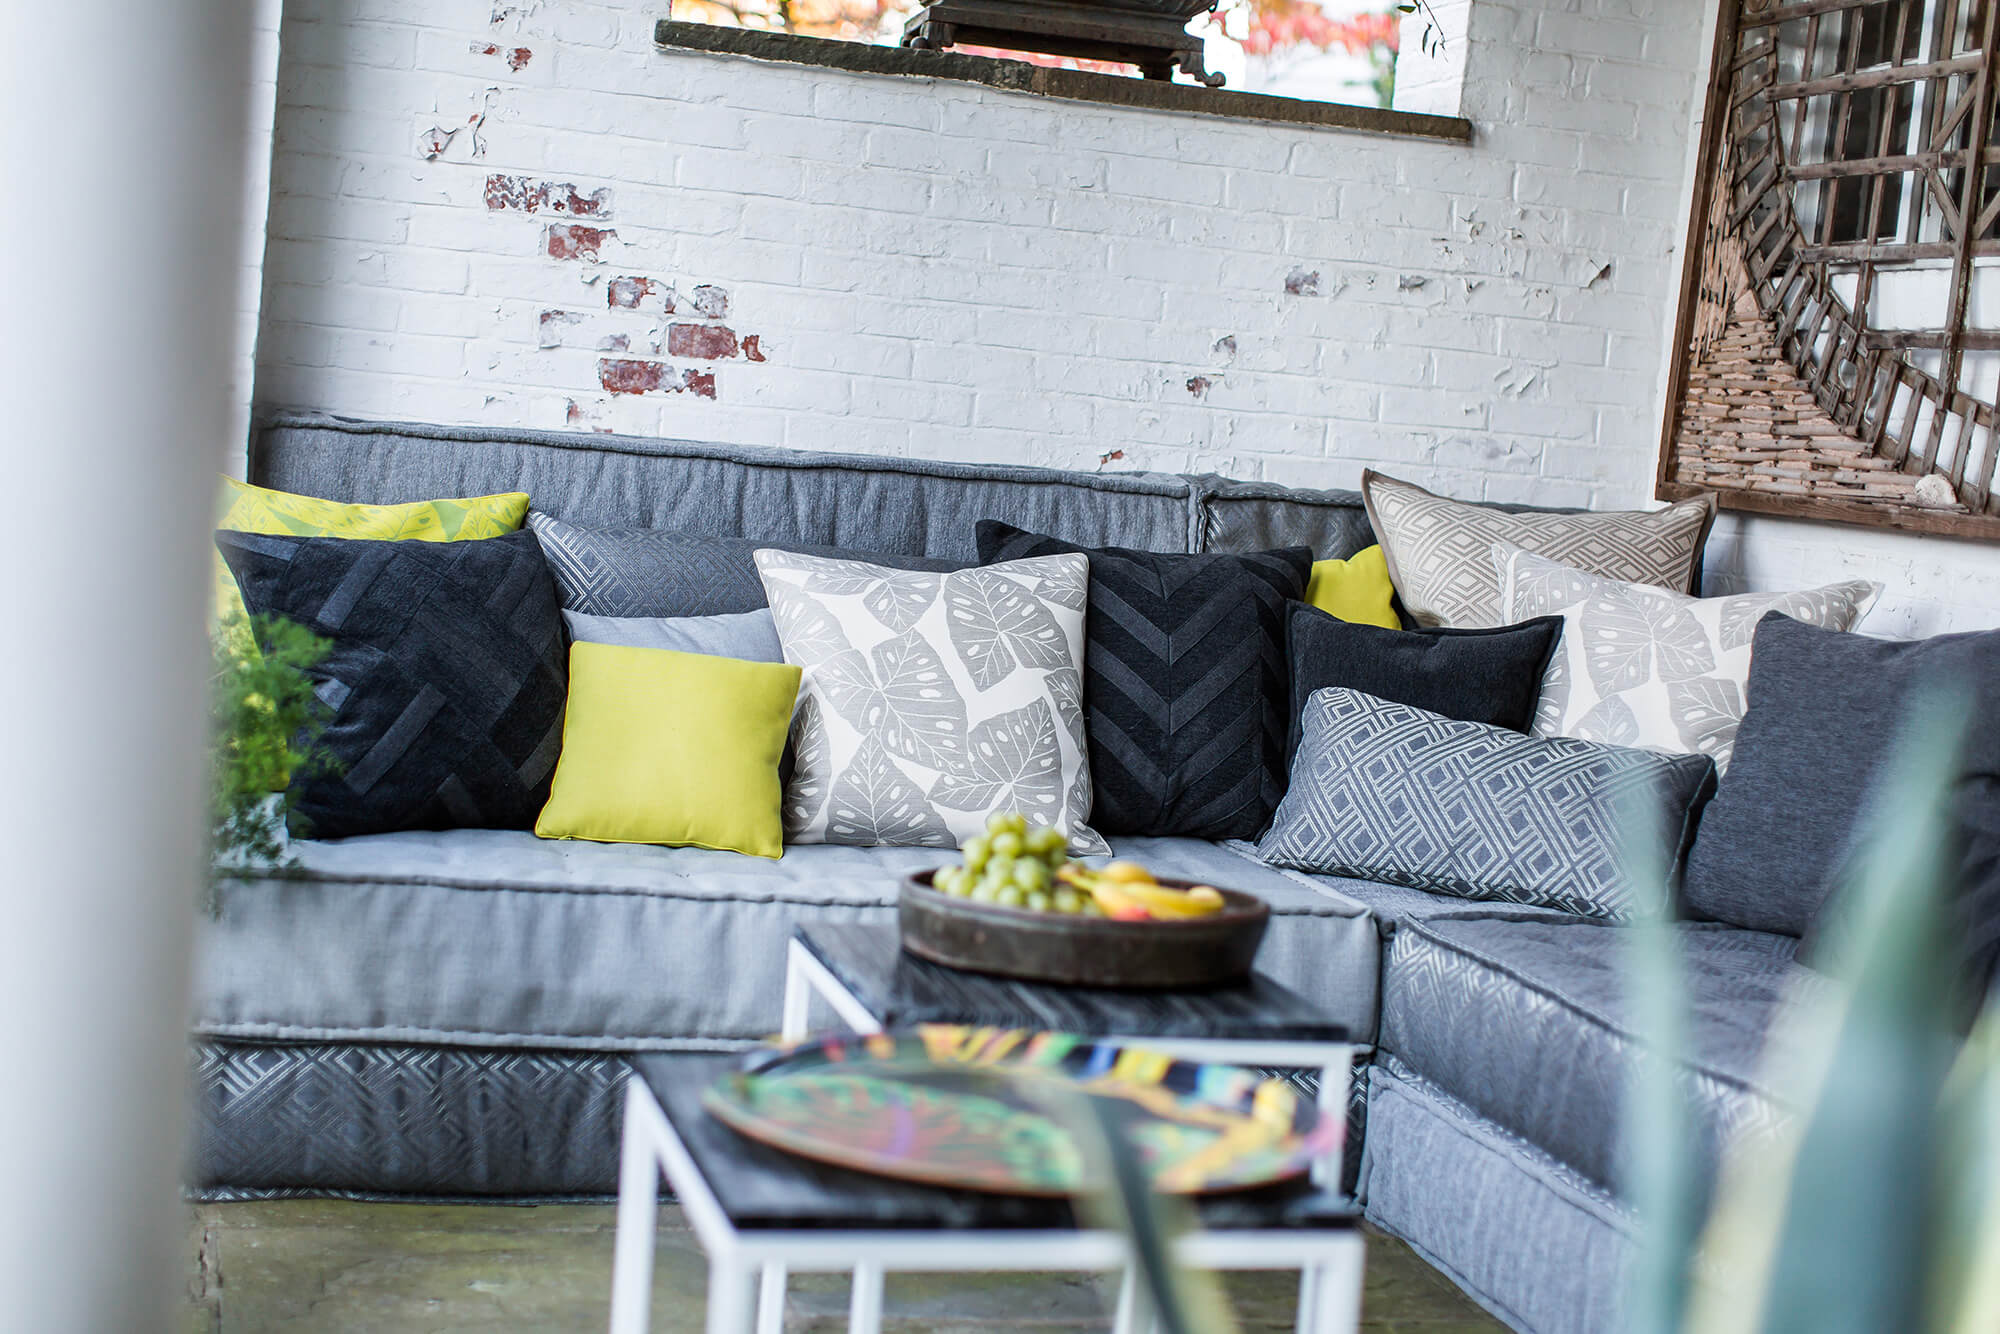 Sofa ngoài trời với tấm đệm màu xám được đặt đầy gối màu xám và một số màu xanh lá cây để làm điểm nhấn